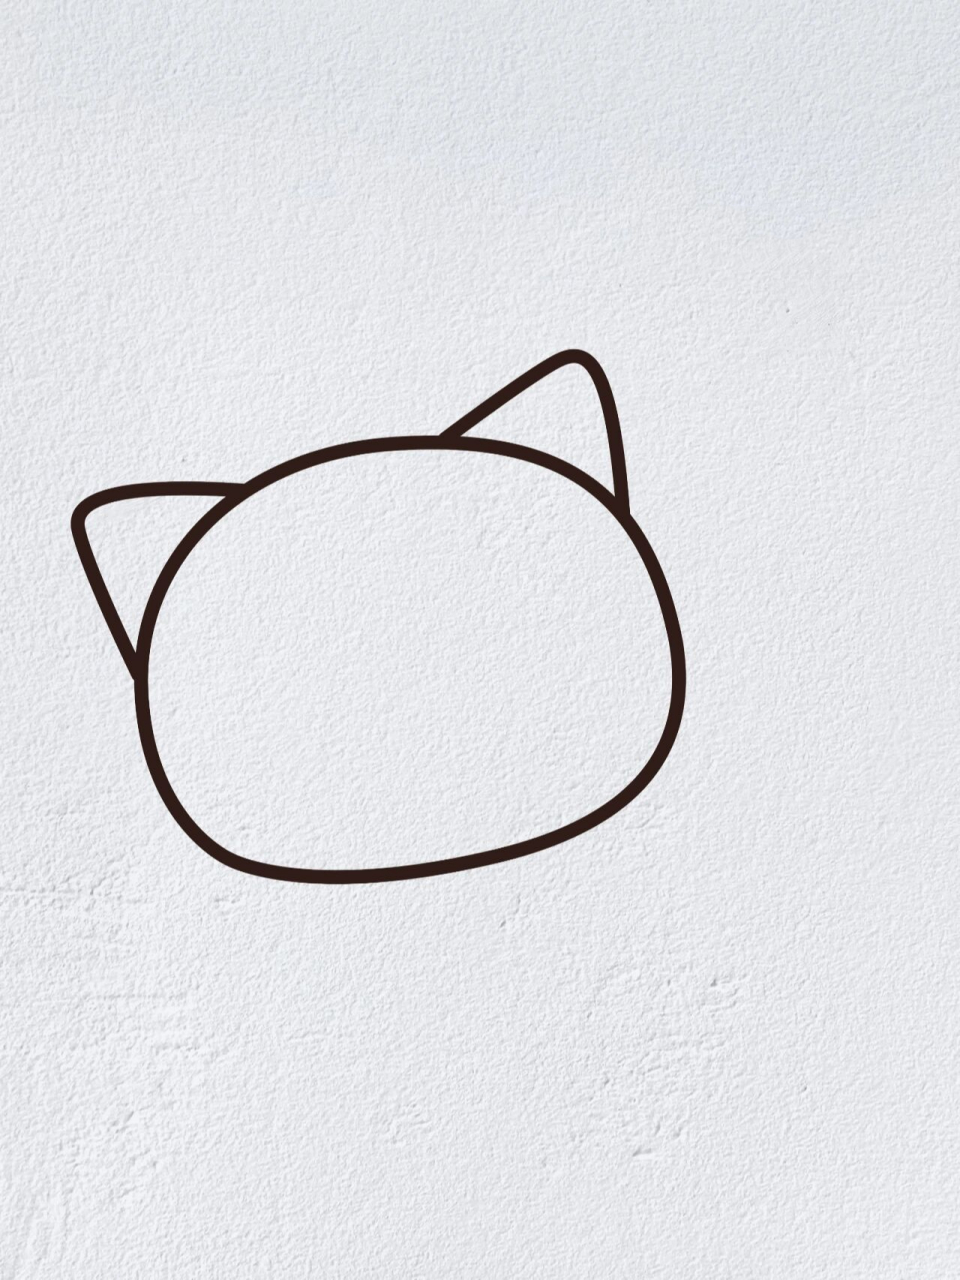 小猫图片简笔画画动物图片